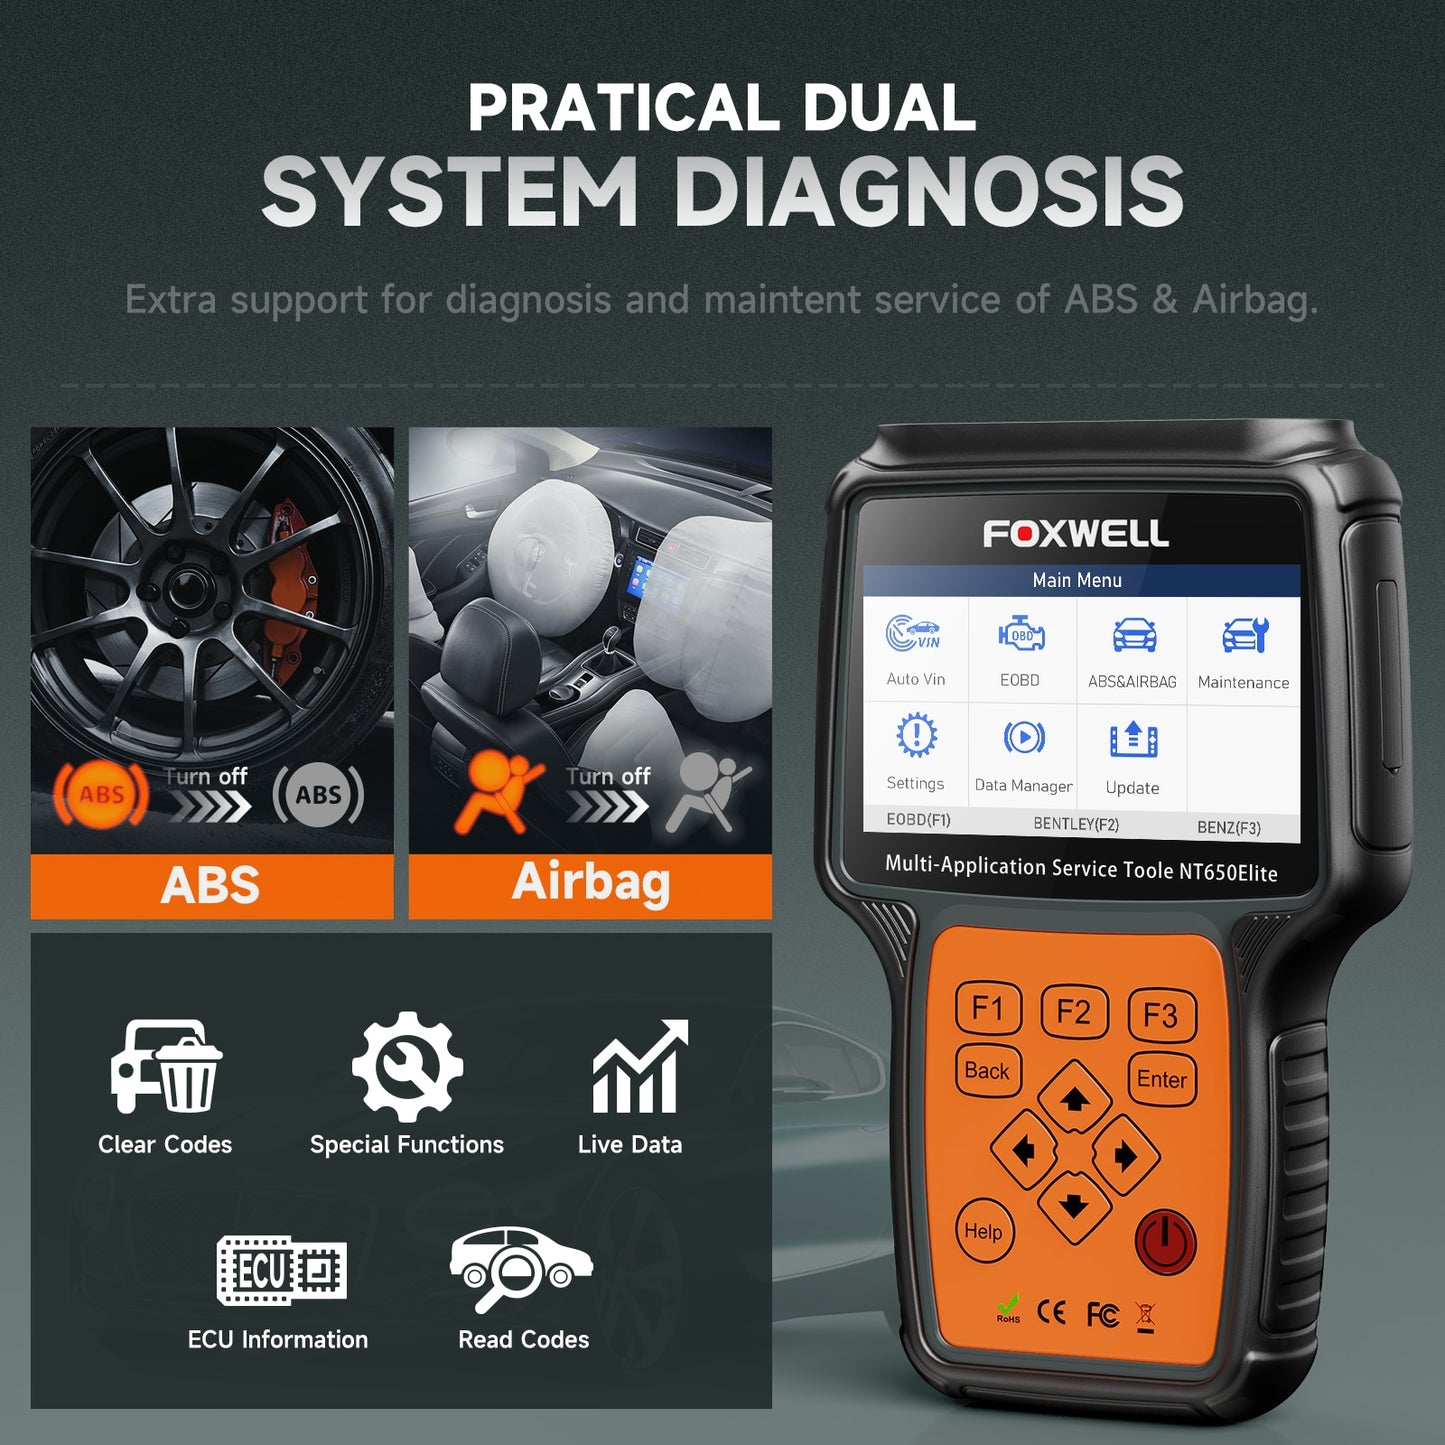 FOXWELL NT650 Elite OBD2 profesionalna avtomobilska diagnostika